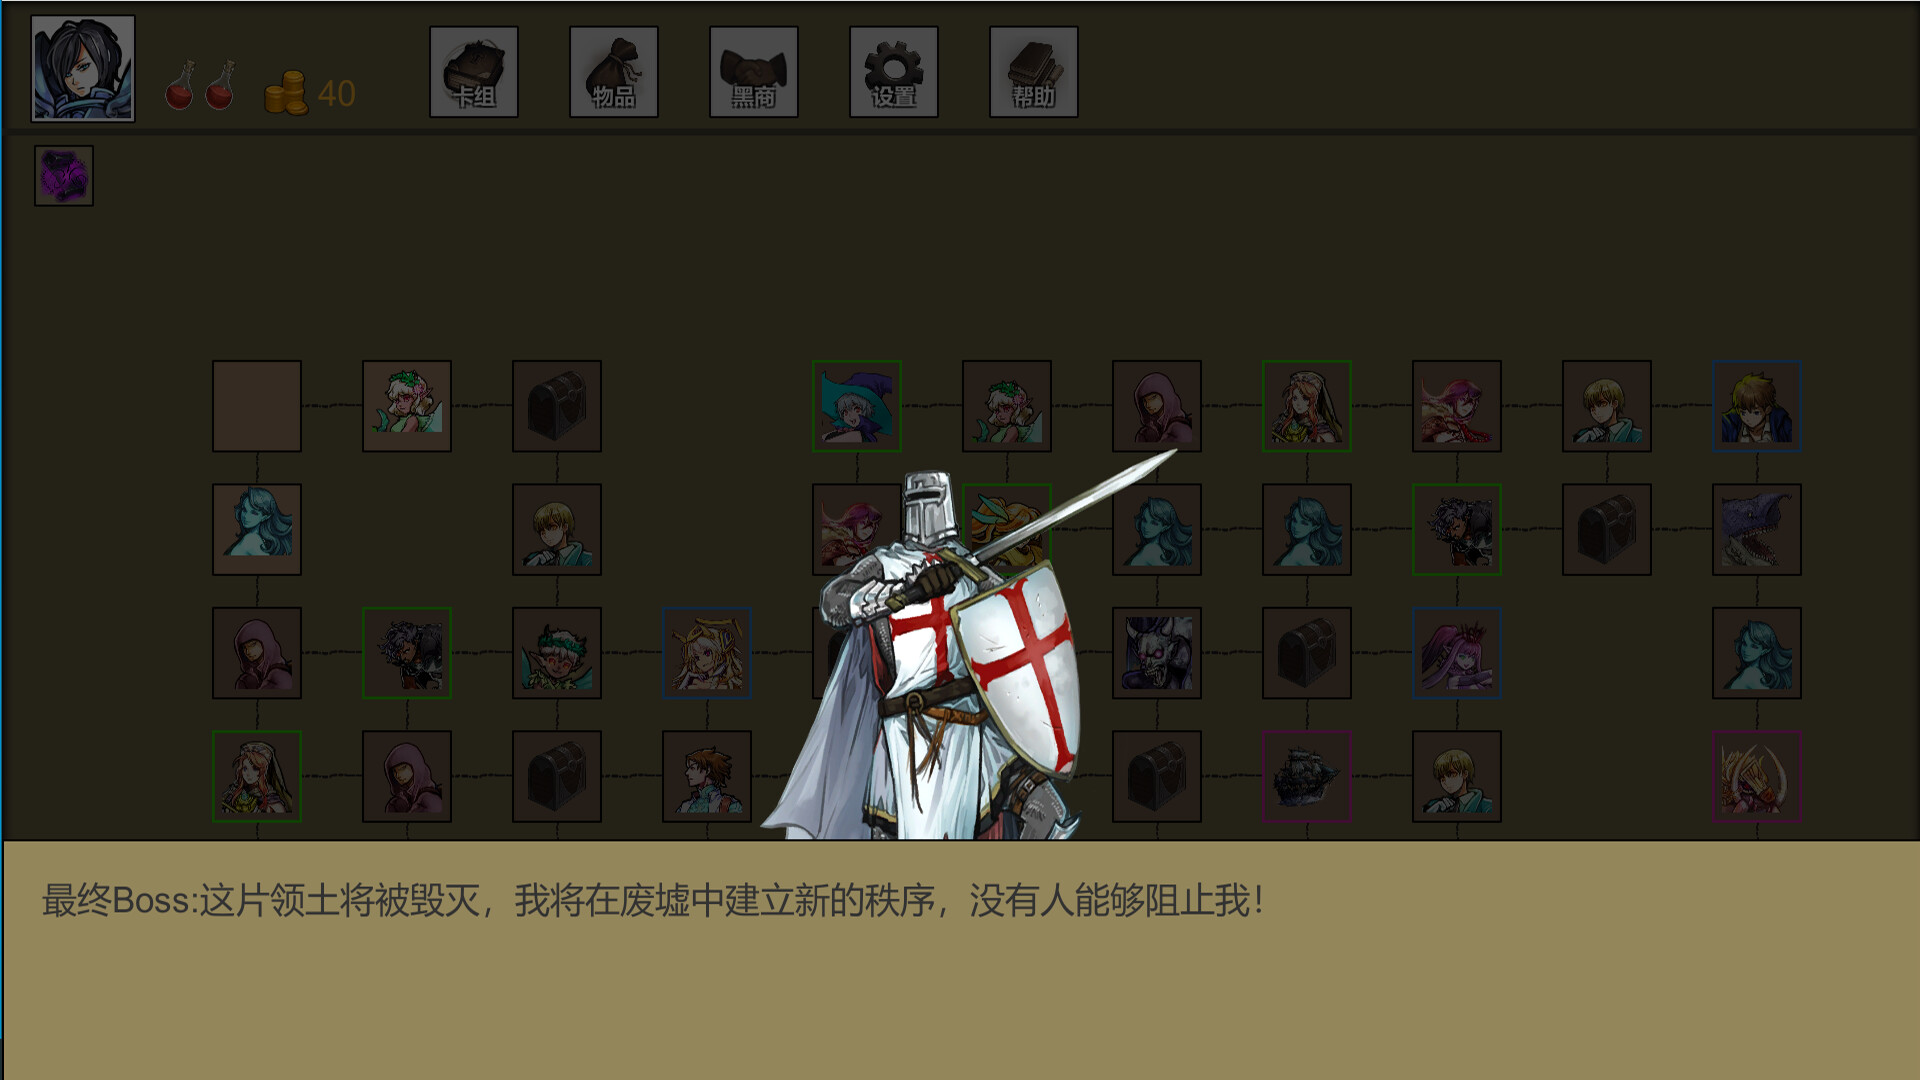 回响之战 Demo Featured Screenshot #1